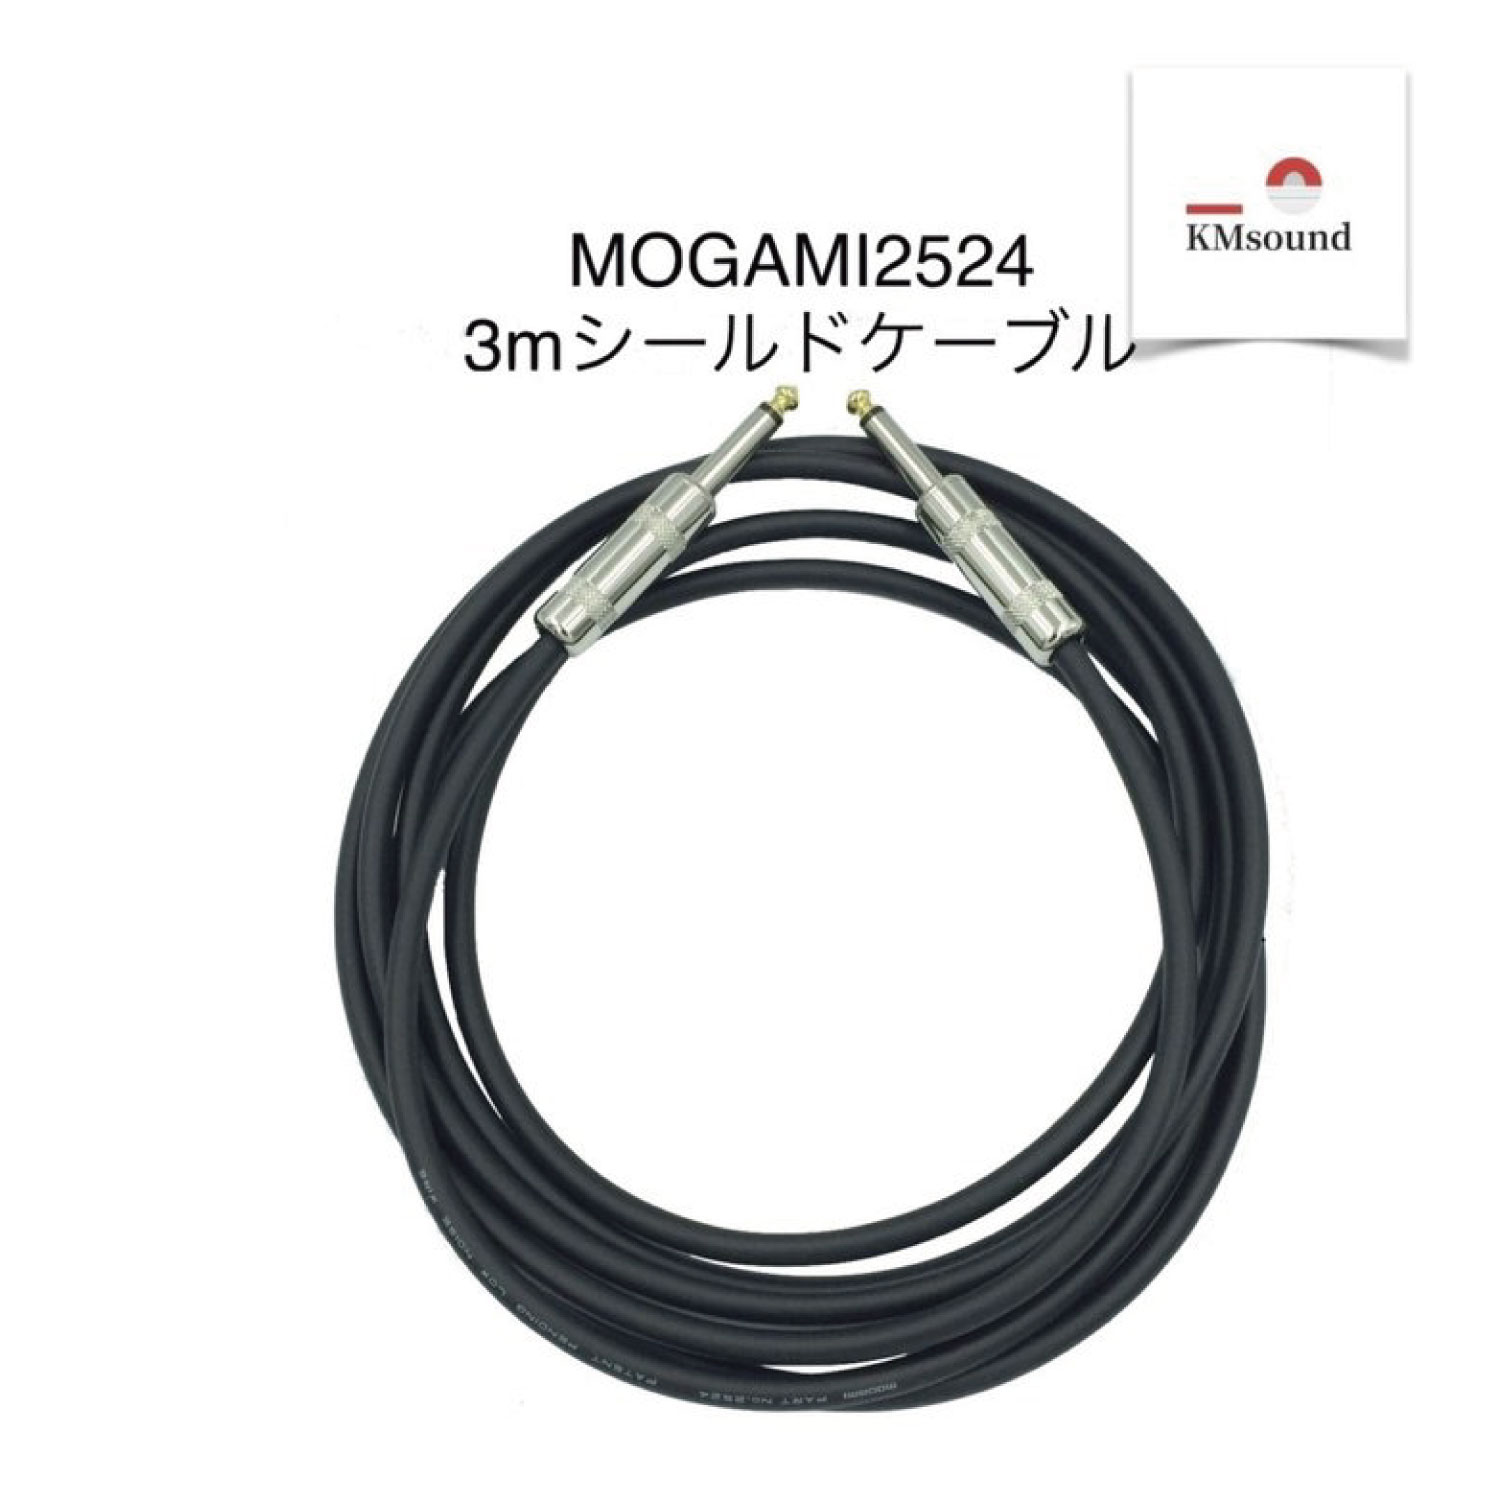 送料無料 迅速にお届け致します MOGAMI モガミ 公式サイト 最安値 2524 シールド ケーブル MADE IN 高音質 S-Sプラグ 3m JAPAN おすすめ